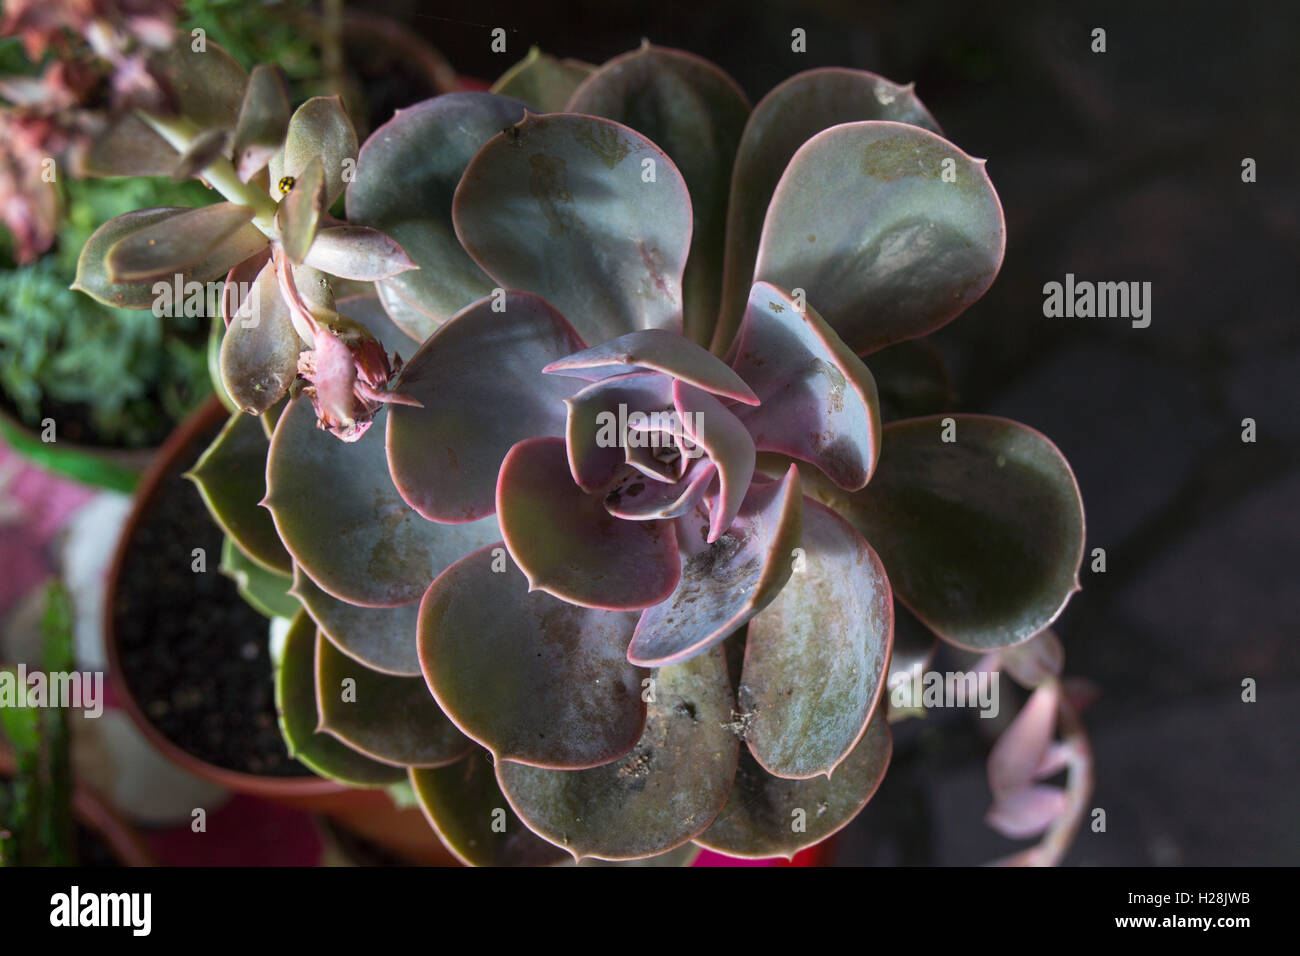 Tipo di Rosetta leafed cactus, 'Echeveria Perle von Nurnberg' cactus. Foto Stock